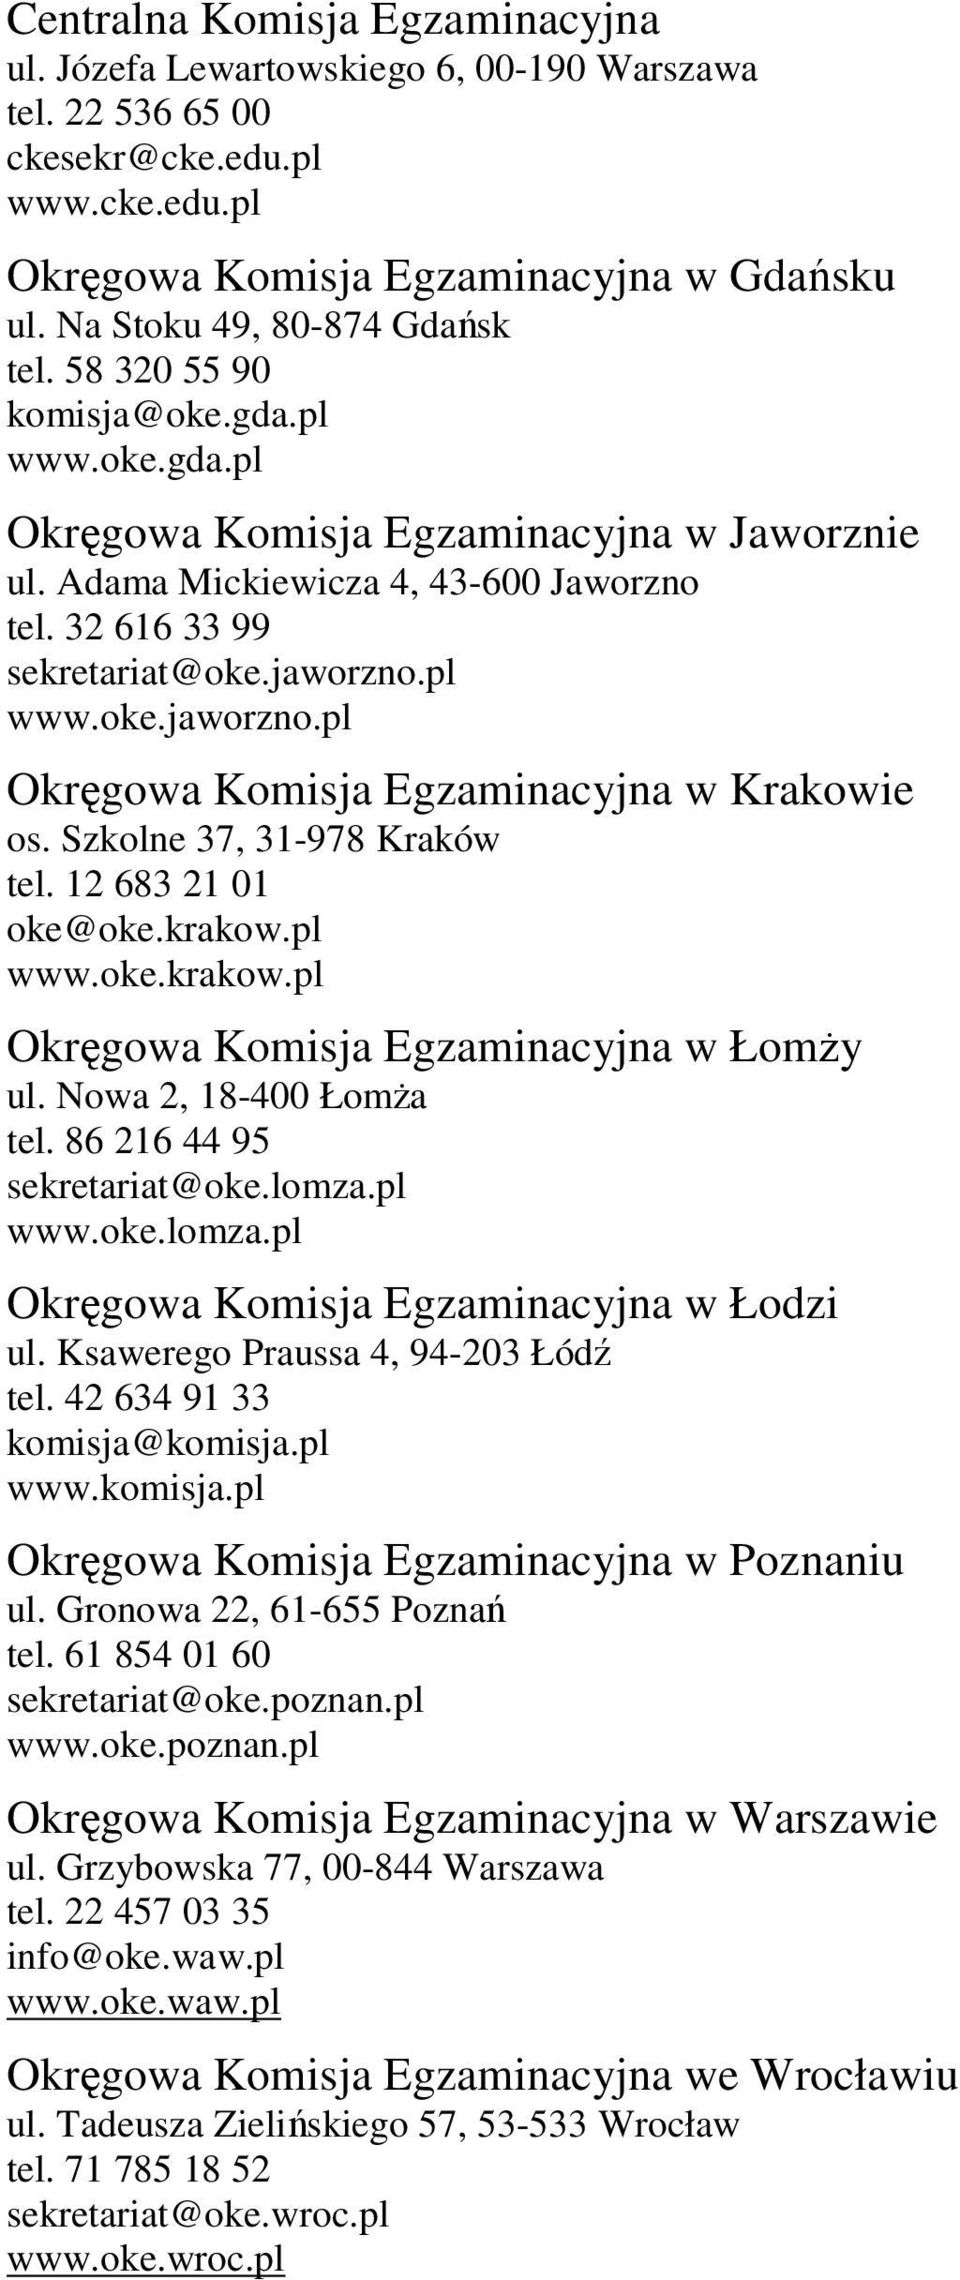 jaworzno.pl www.oke.jaworzno.pl Okręgowa Komisja Egzaminacyjna w Krakowie os. Szkolne 37, 31-978 Kraków tel. 12 683 21 01 oke@oke.krakow.pl www.oke.krakow.pl Okręgowa Komisja Egzaminacyjna w ŁomŜy ul.